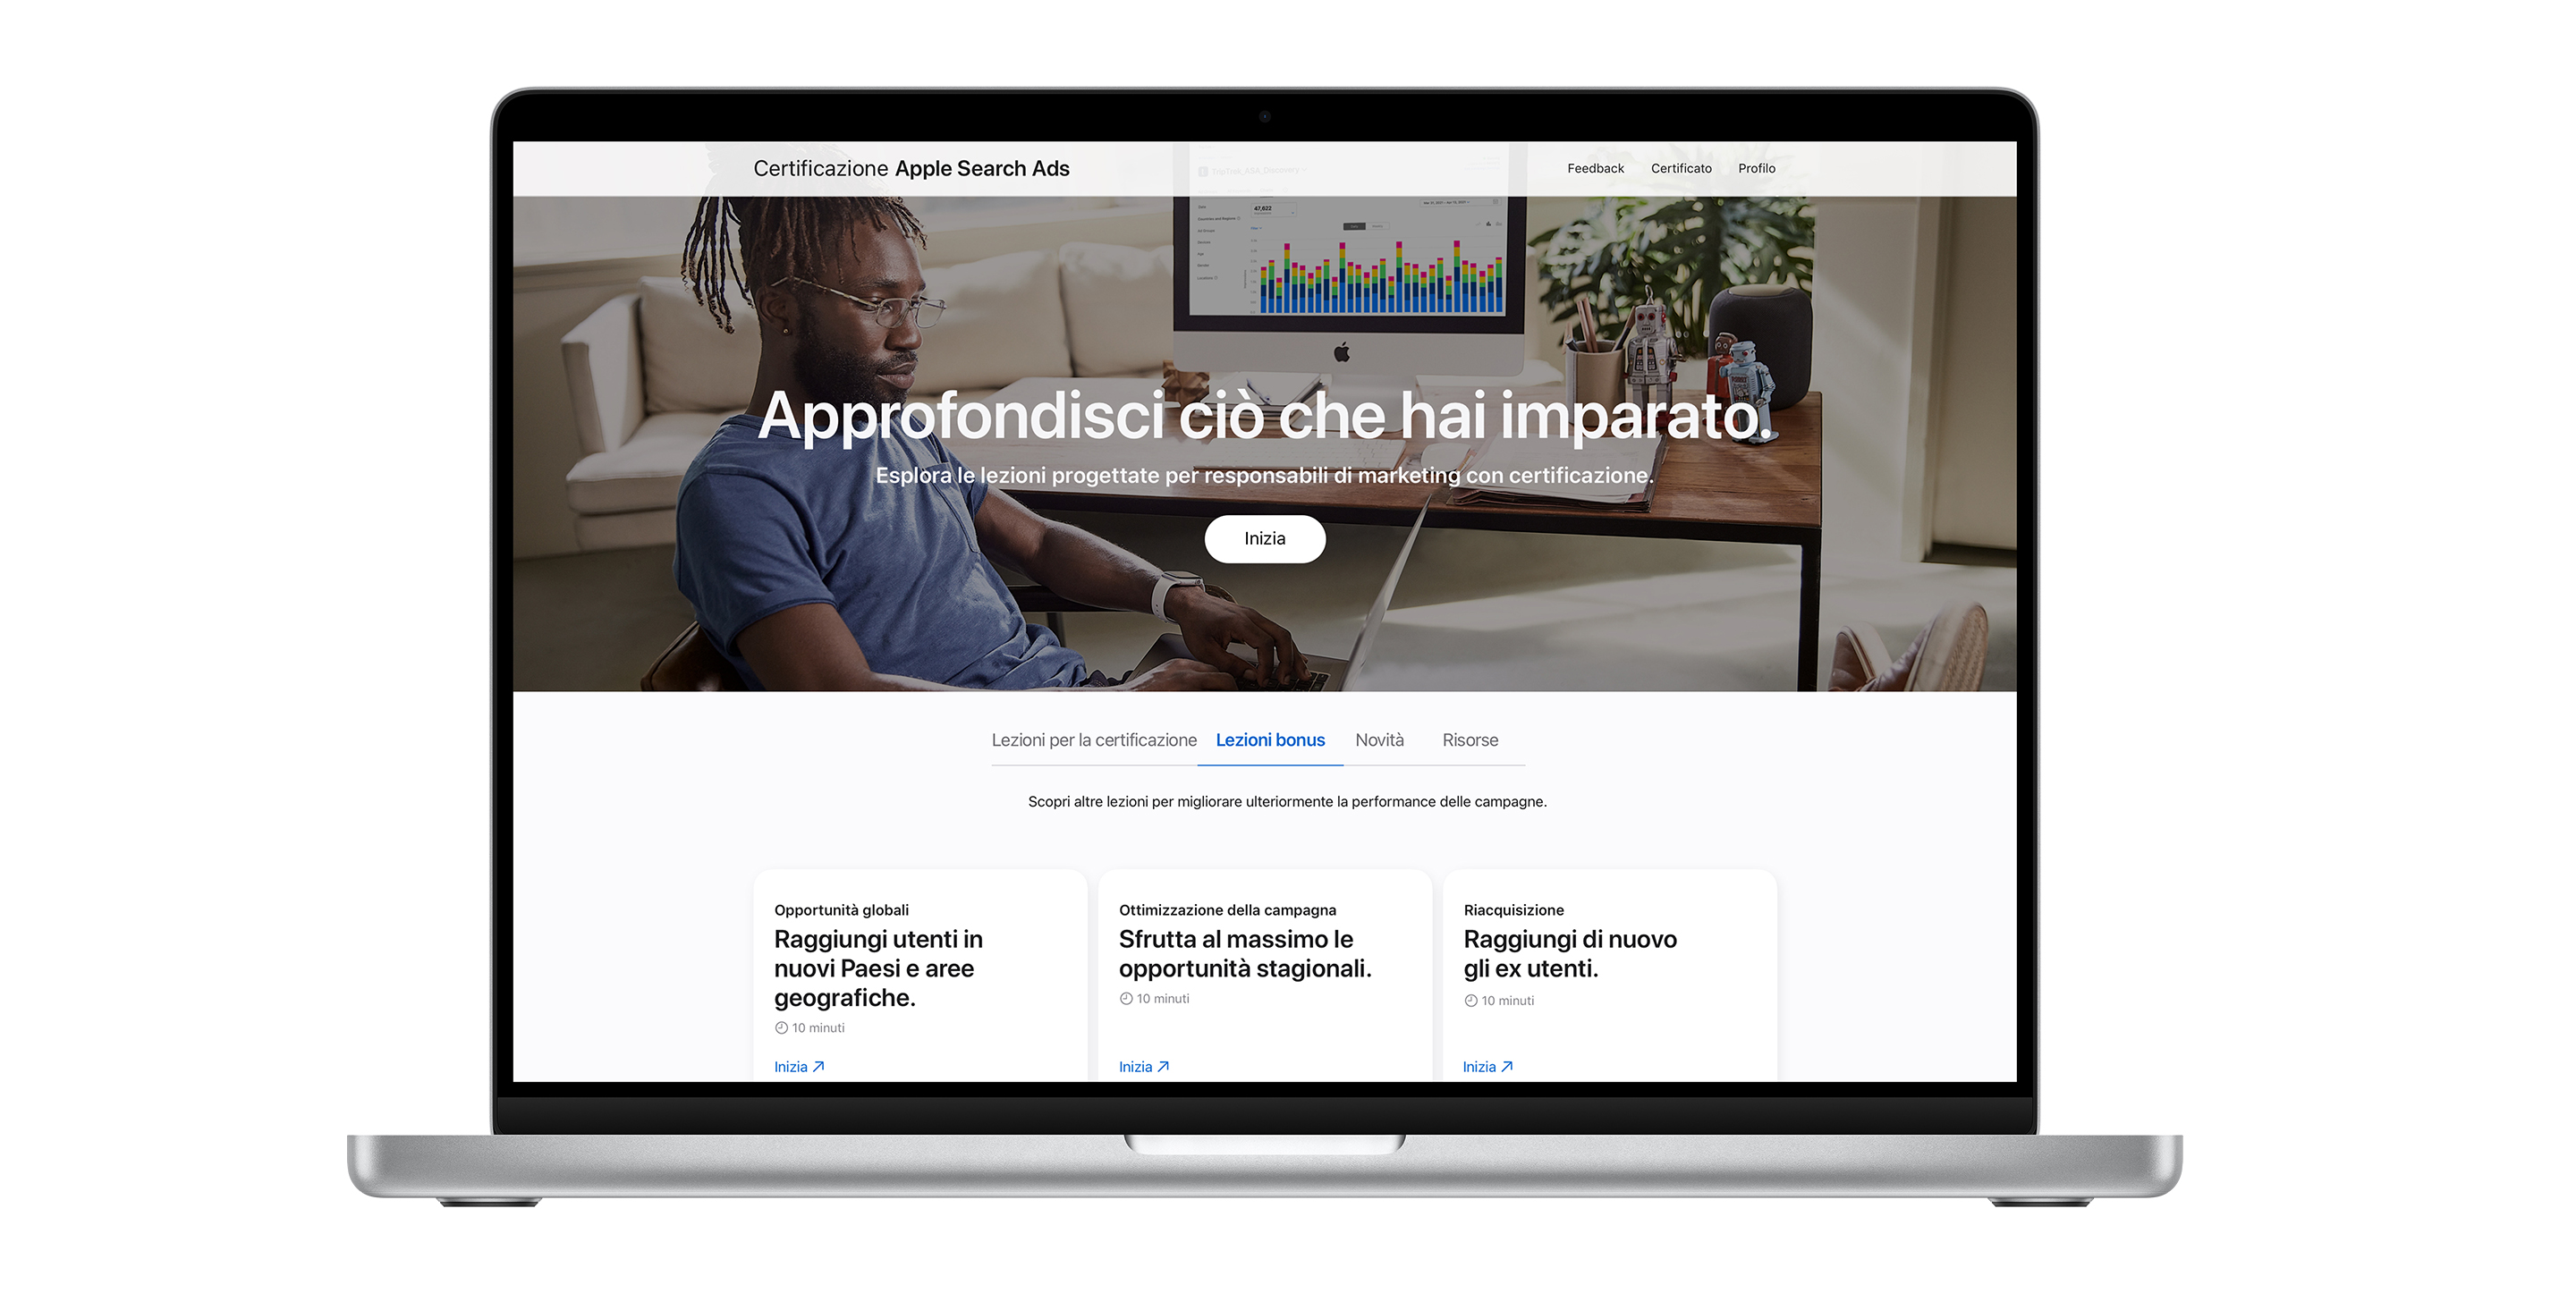 Pagina della certificazione Apple Search Ads che mostra il pannello delle lezioni bonus. Sono visualizzate tre lezioni incentrate su come migliorare la performance delle campagne.